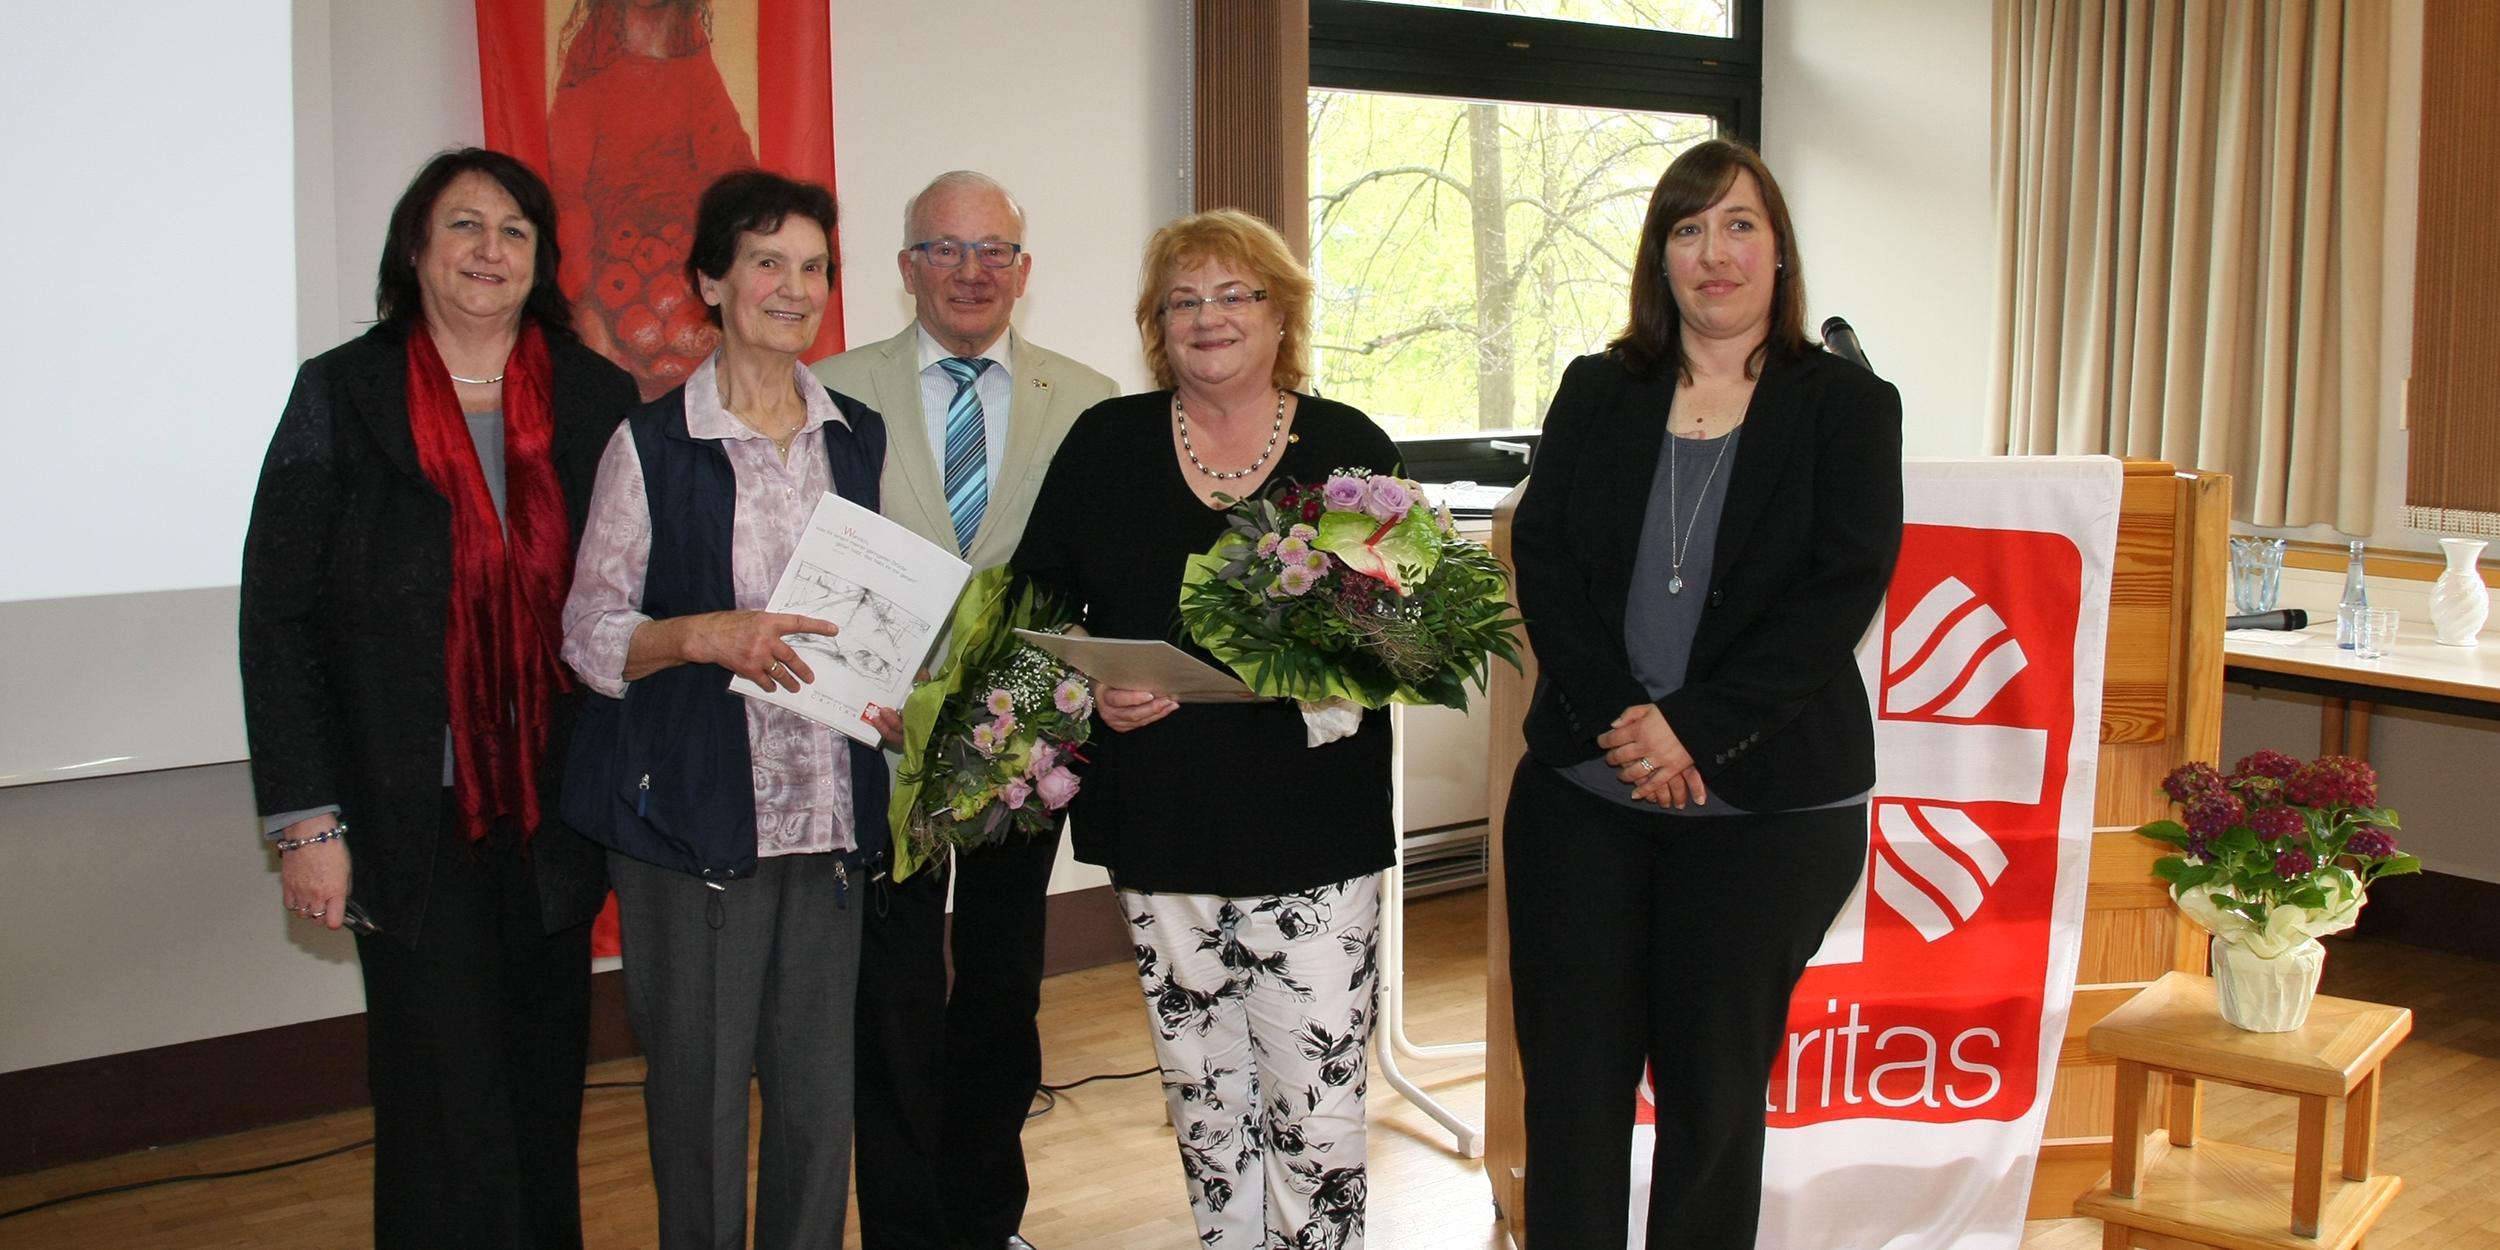 Claudia Pauly, Elfriede Gerl, Werner Hammes, Judith Höfer und Sonja Maibach (v.l.) beim Festakt zu 20 Jahre Schöppche Neuwied